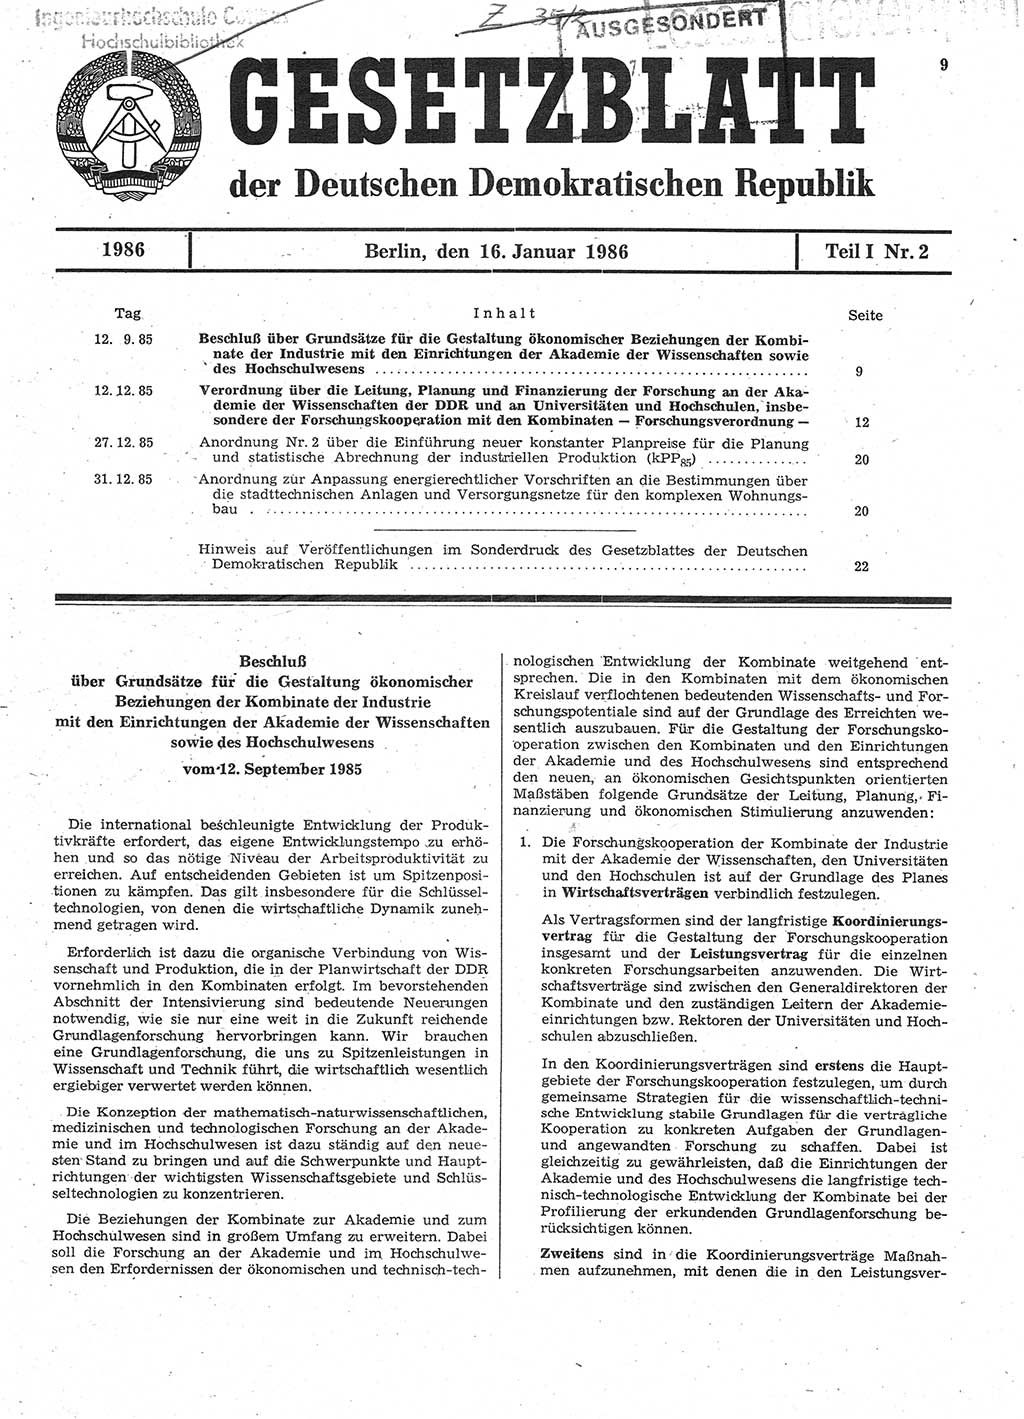 Gesetzblatt (GBl.) der Deutschen Demokratischen Republik (DDR) Teil Ⅰ 1986, Seite 9 (GBl. DDR Ⅰ 1986, S. 9)